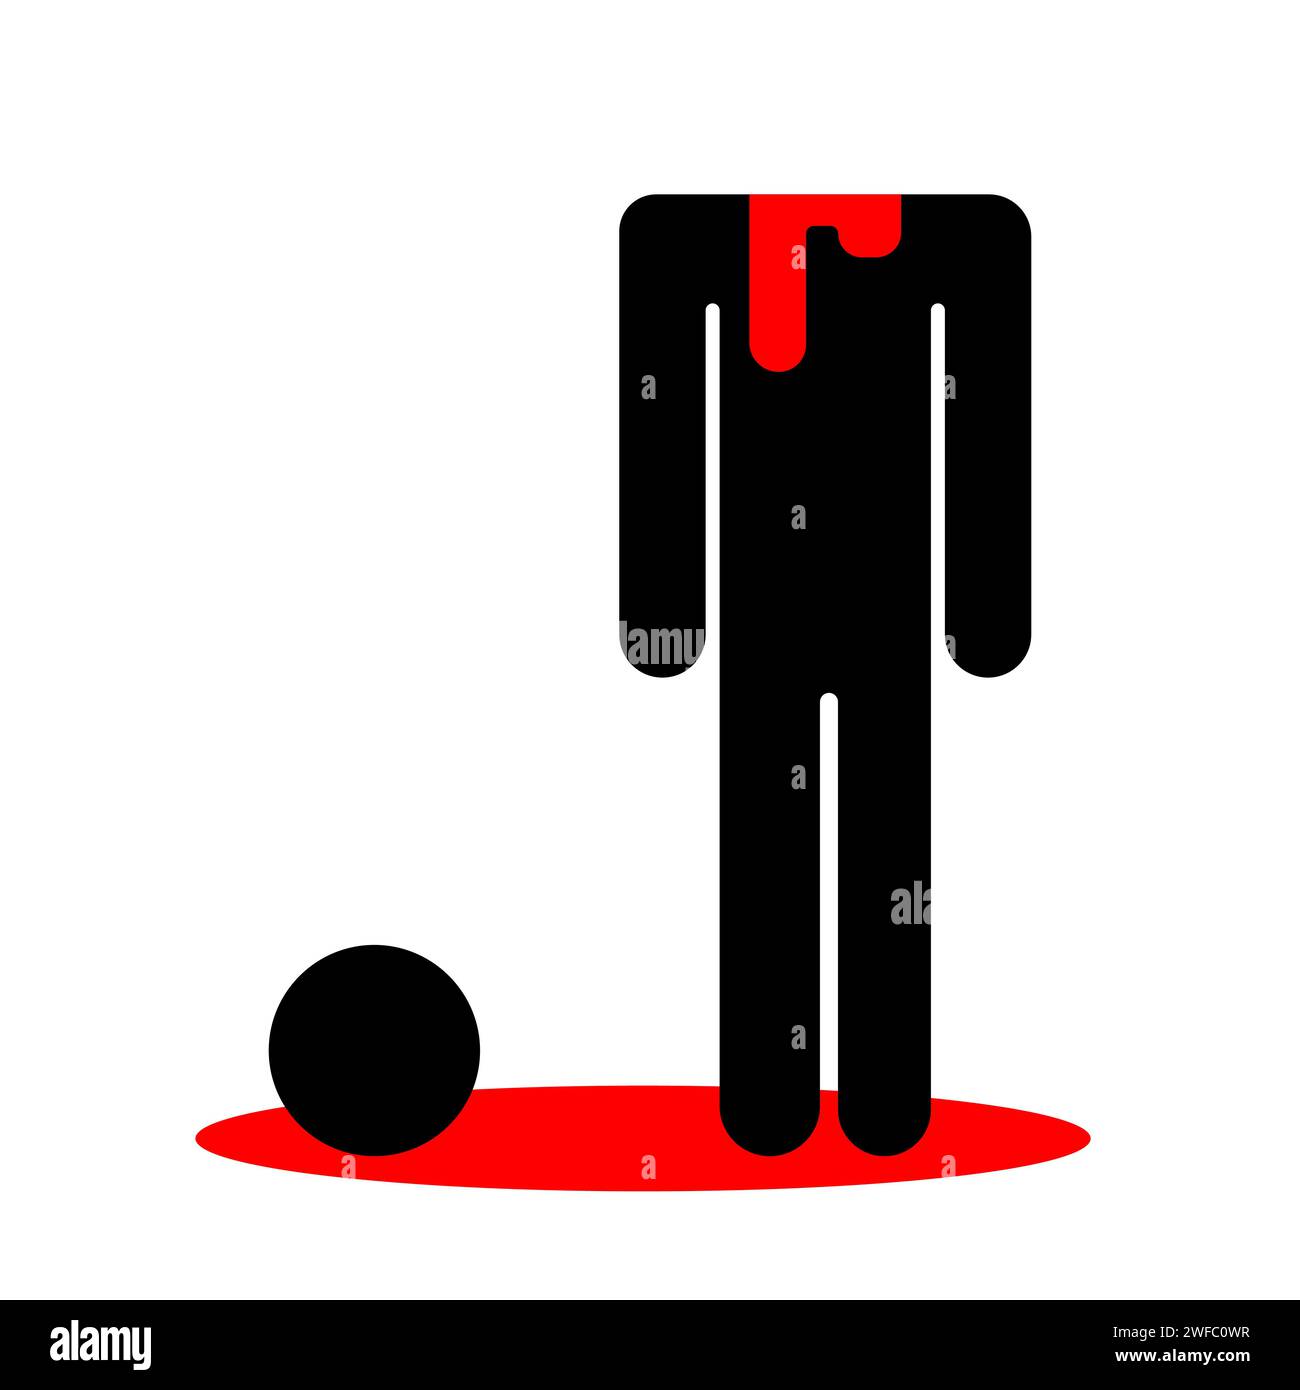 Uomo con la testa tagliata. In una pozza di sangue. Cadavere. Silhouette umana. Scena del crimine. Illustrazione vettoriale. Immagine stock. EPS 10. Illustrazione Vettoriale